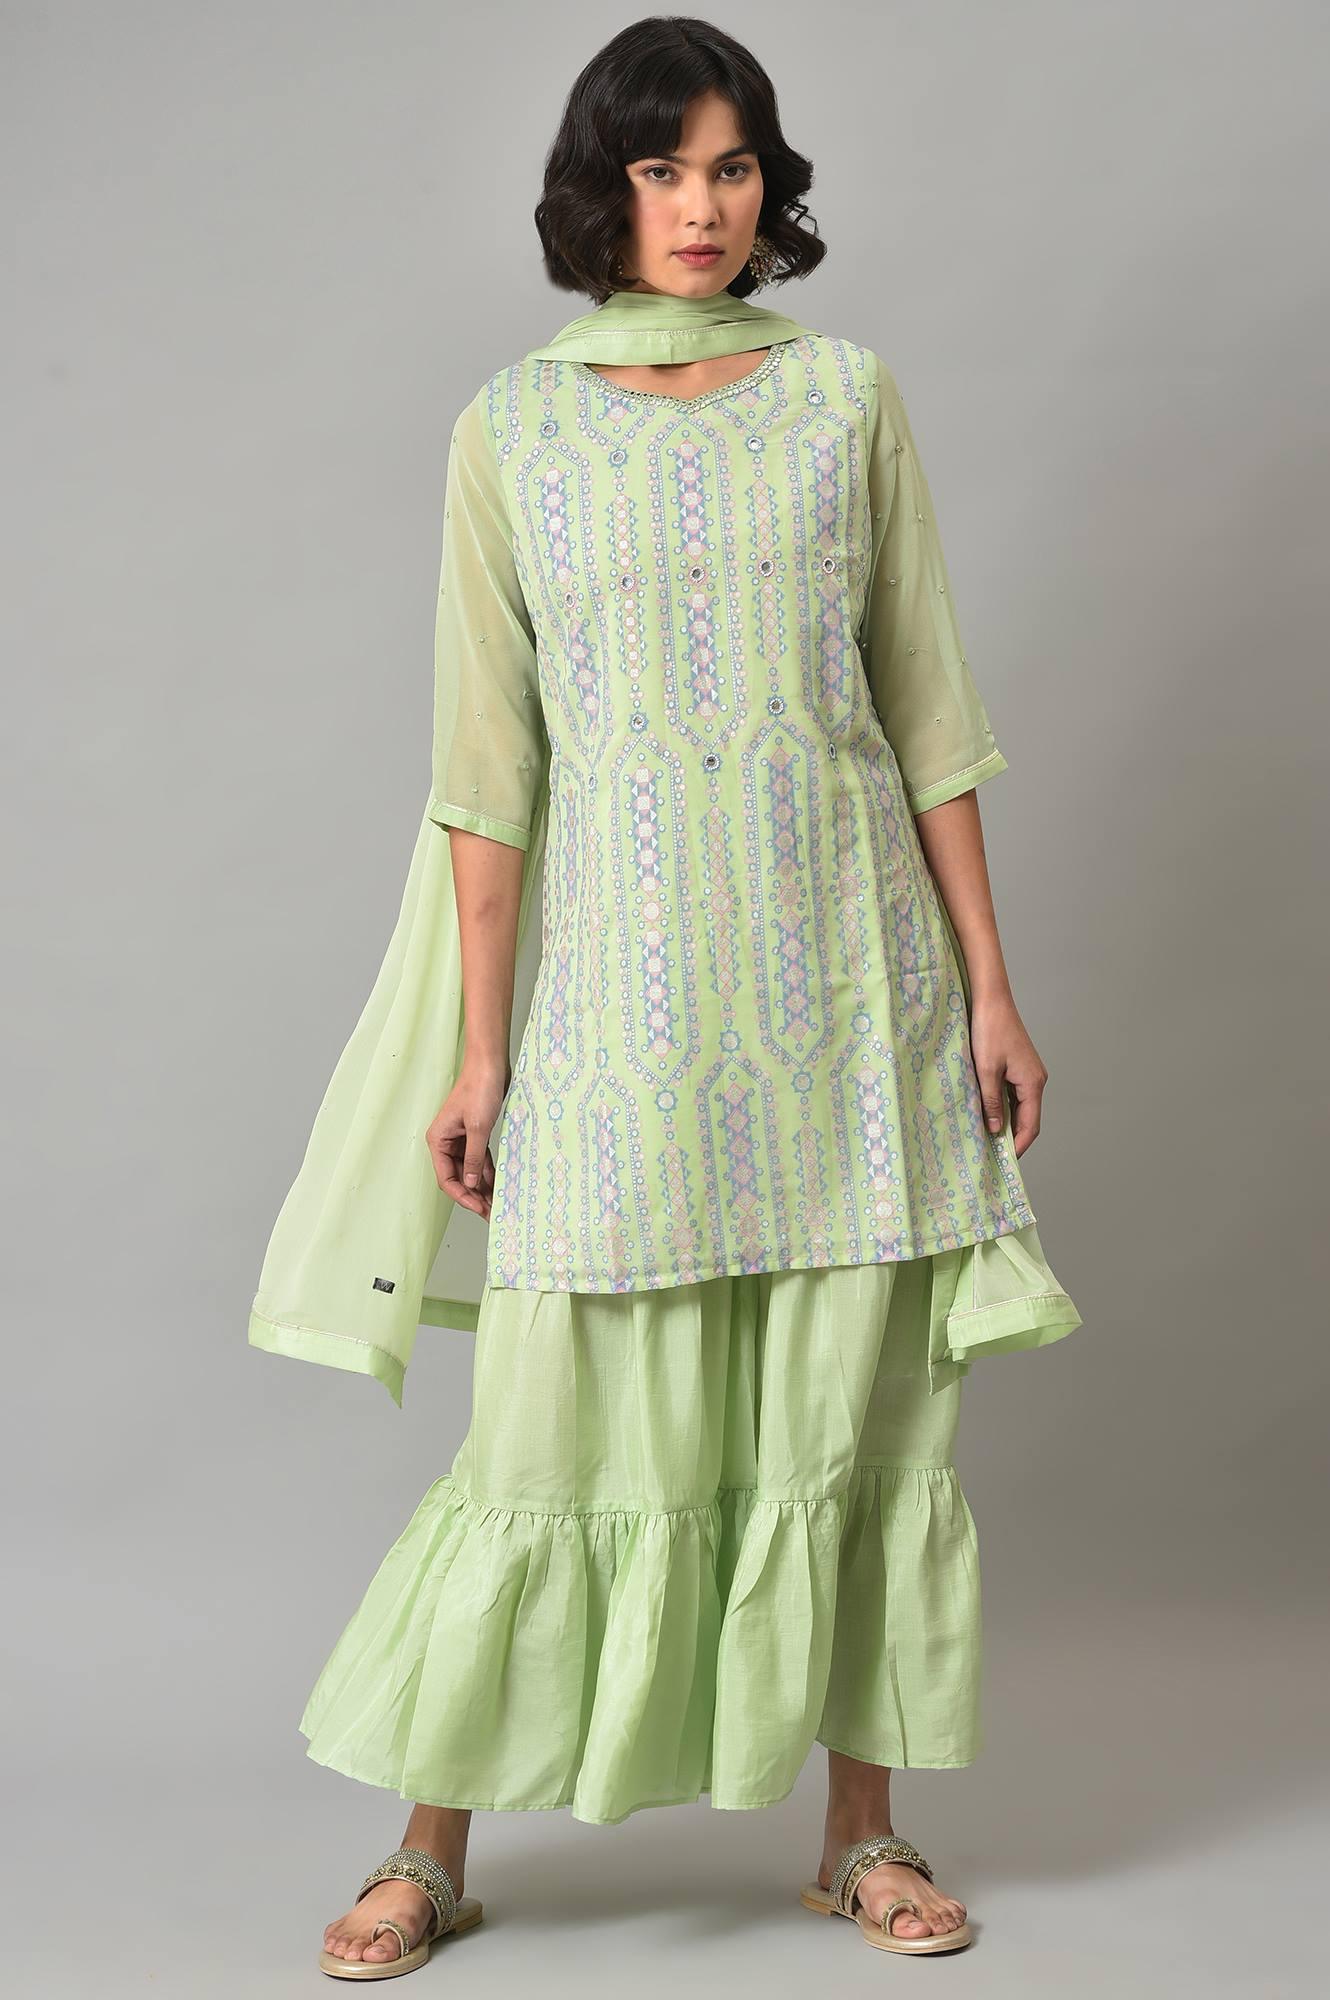 Green Printed kurta, Sharara And Dupatta Set - wforwoman